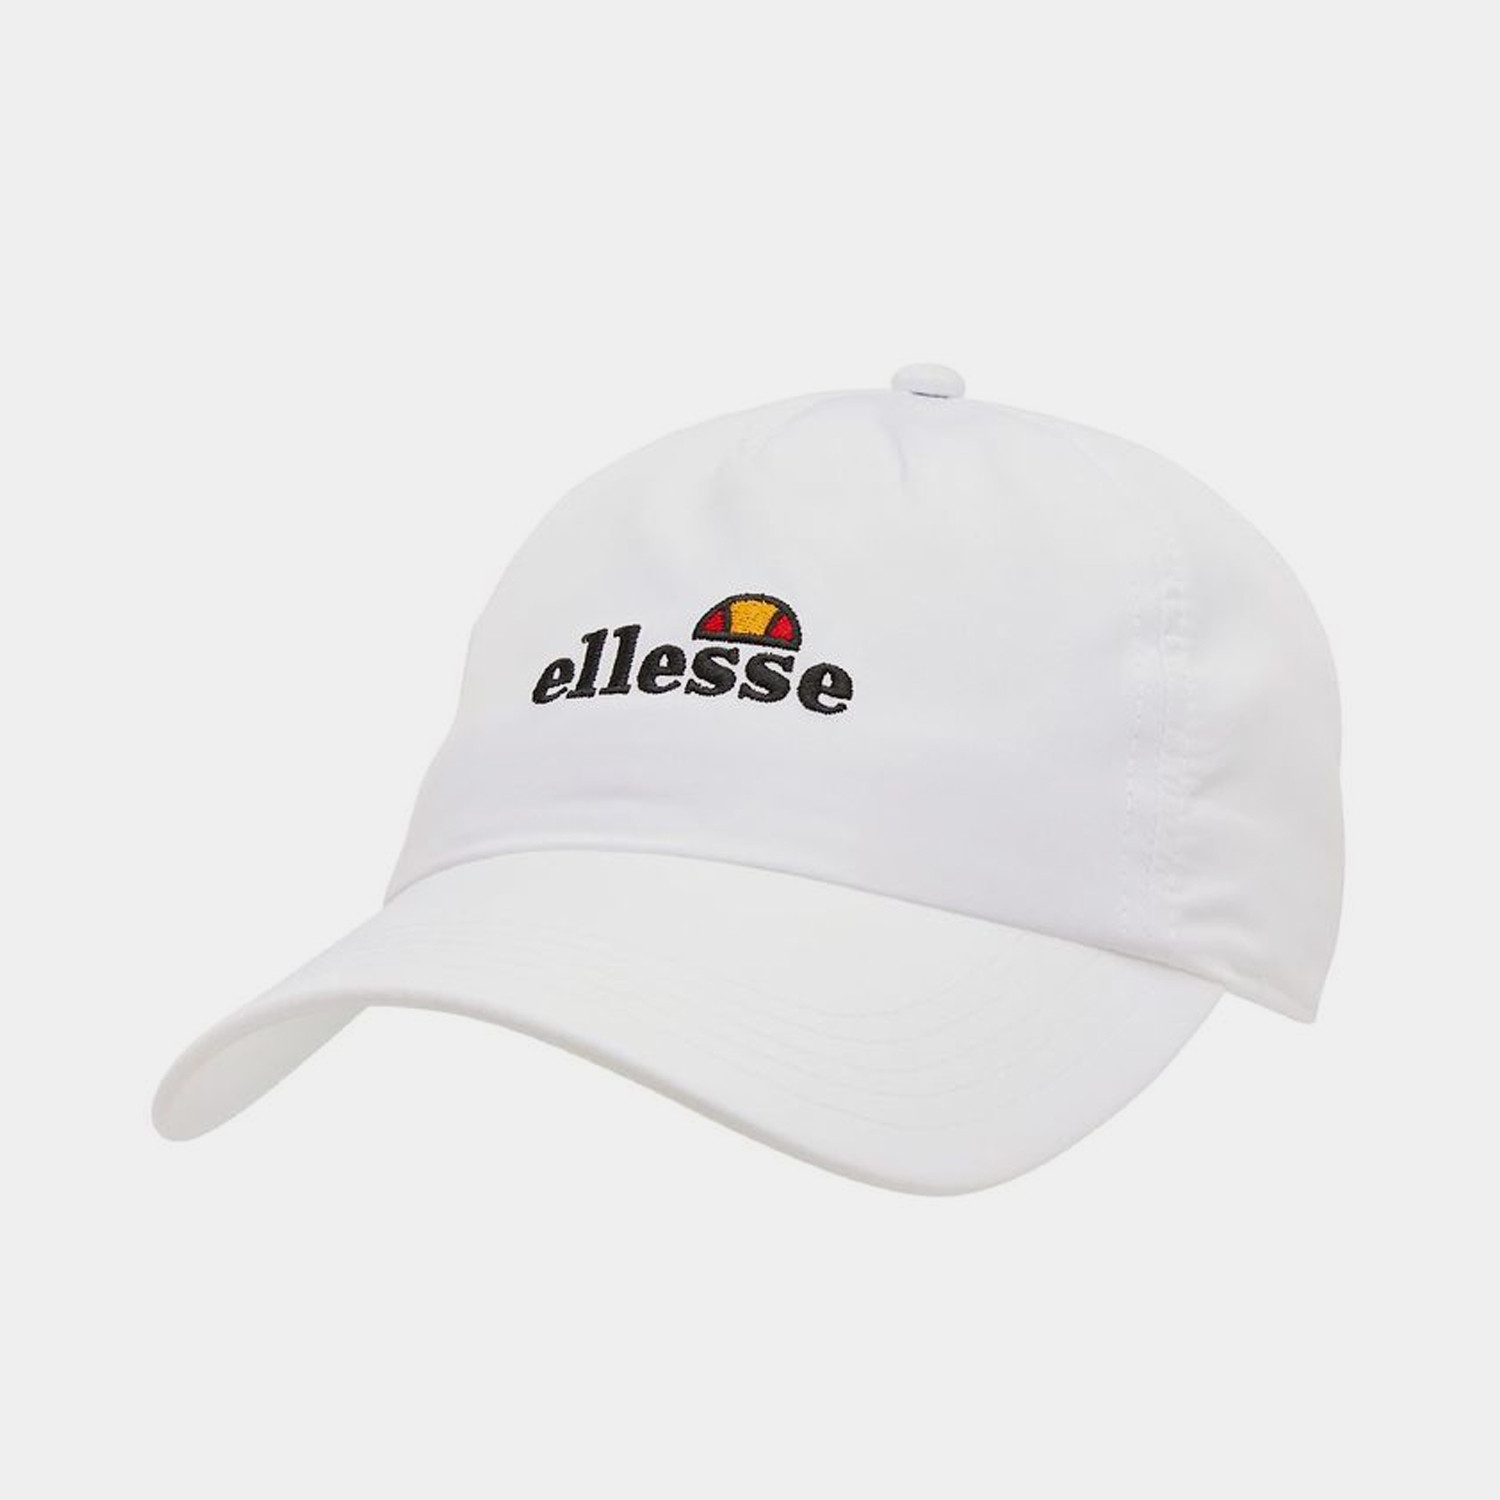 Ellesse Olbo Ανδρικό Καπέλο (9000076320_1539)